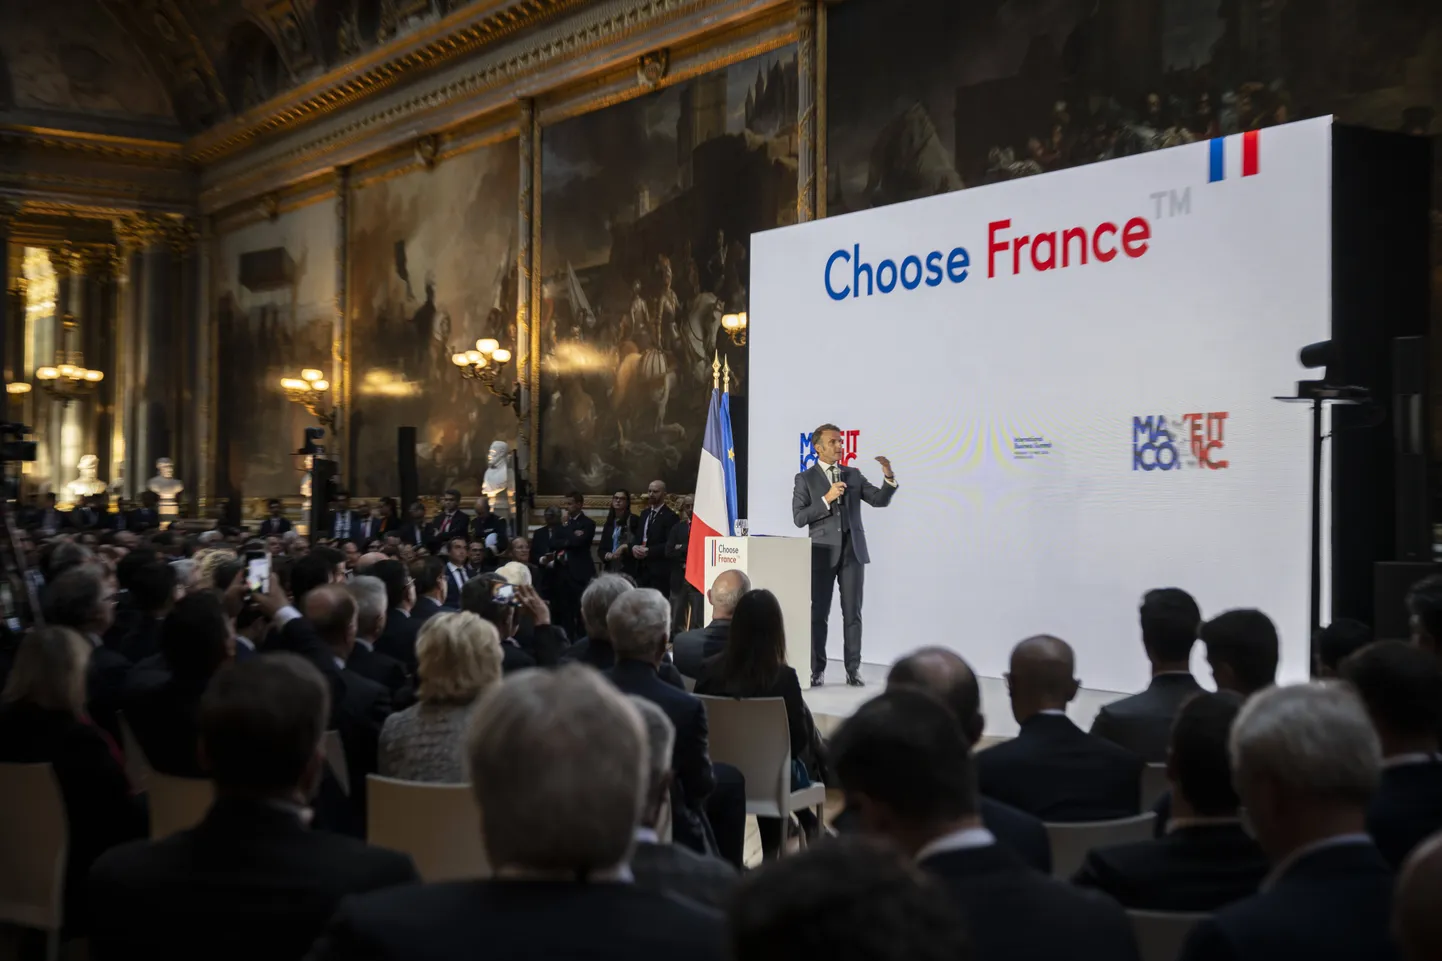 Prantsuamaa president Emmanuel Macron tippkohtumise "Vali Prantsuamaa" (Choose France Summit) ettevõtete juhtidele ettekannet pidamas. 04SIPA_1904.06120/Credit:Blondet / POOL/SIPA/2405141120